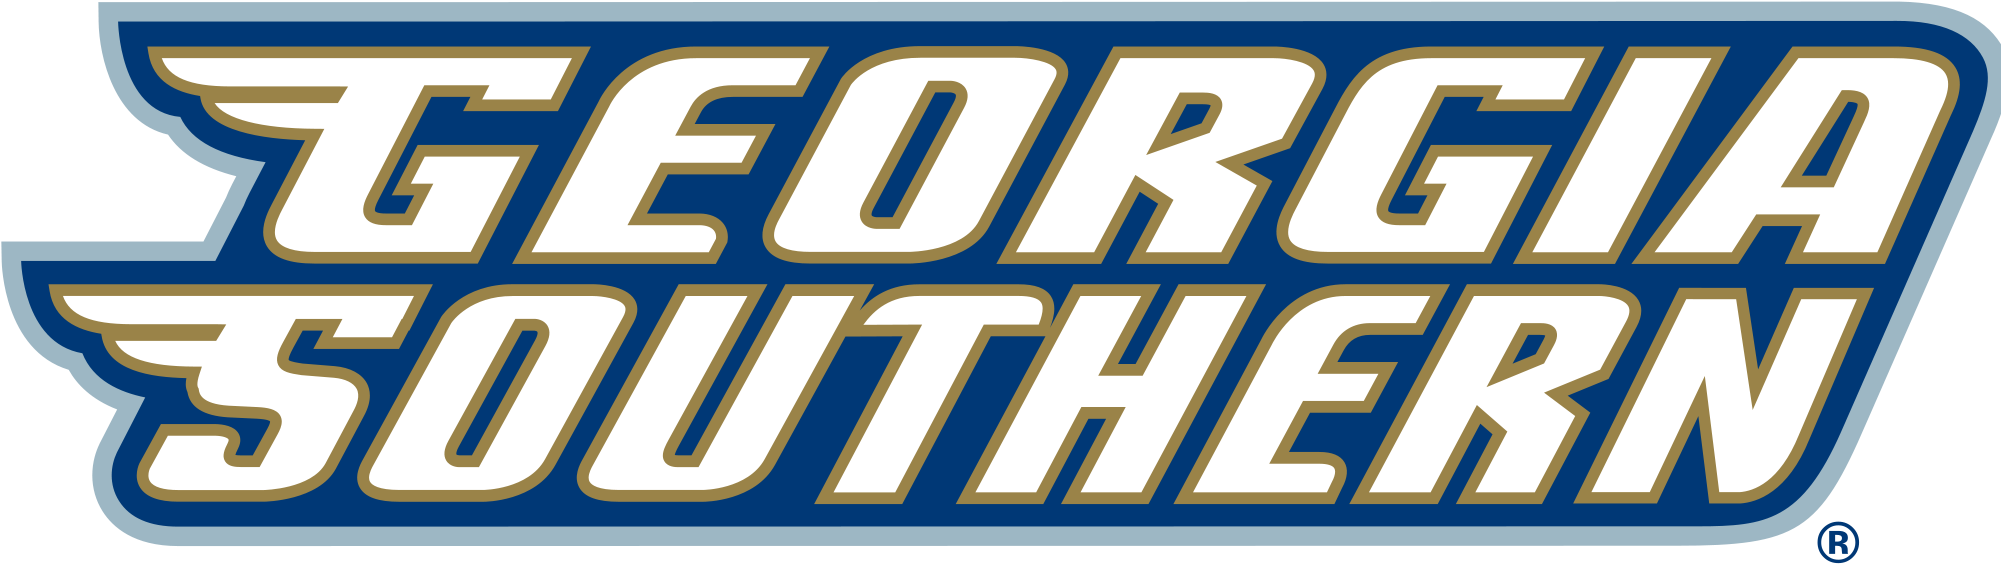 Georgia Southern University - Georgia Southern Eagles Logo (2000x571)